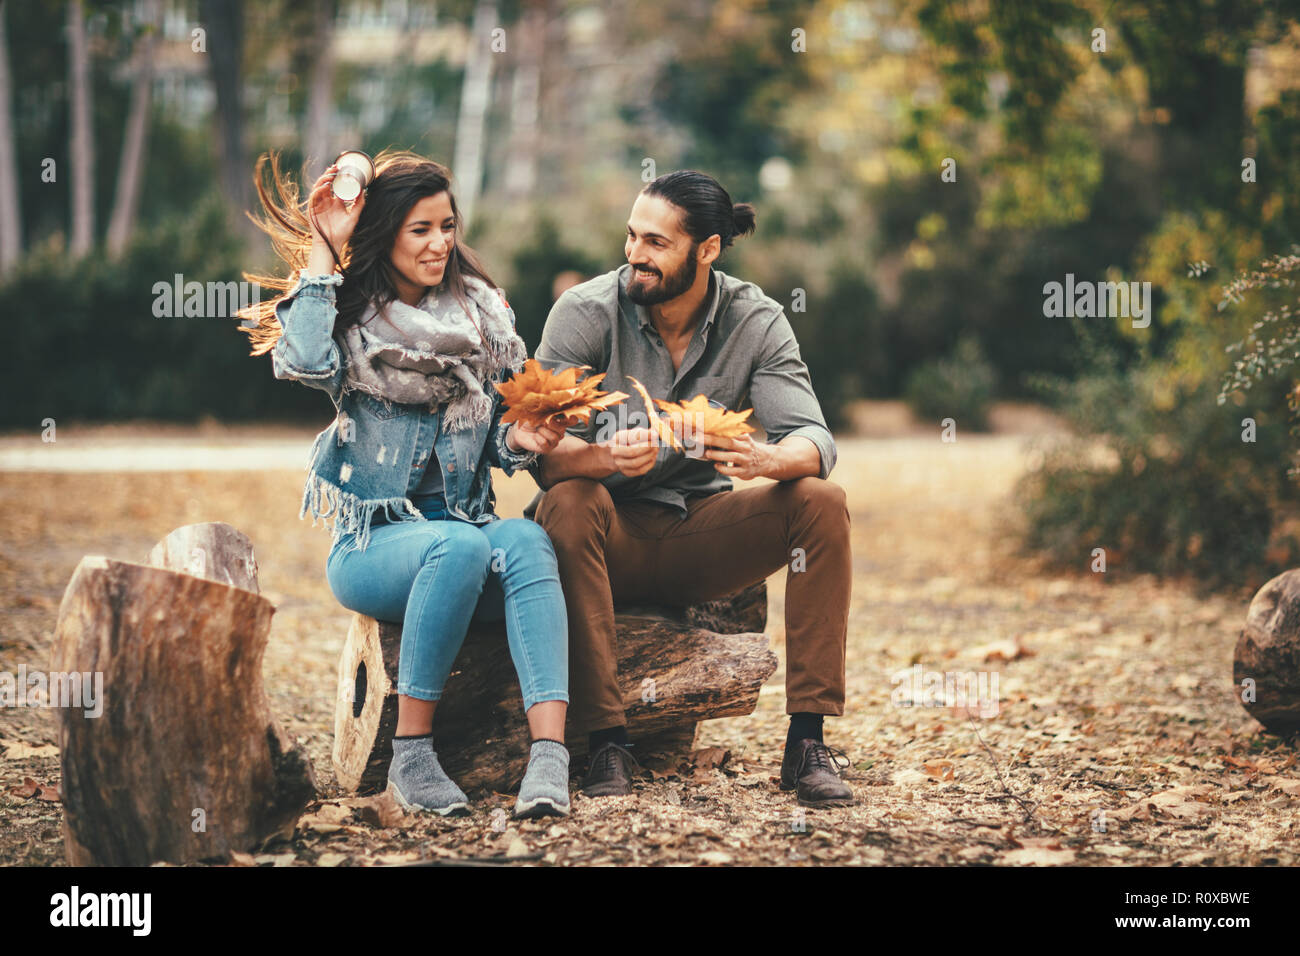 Beautiful smiling couple enjoying sunny city park de couleurs d'automne à l'autre. Ils ont du plaisir avec des feuilles jaunes. Banque D'Images